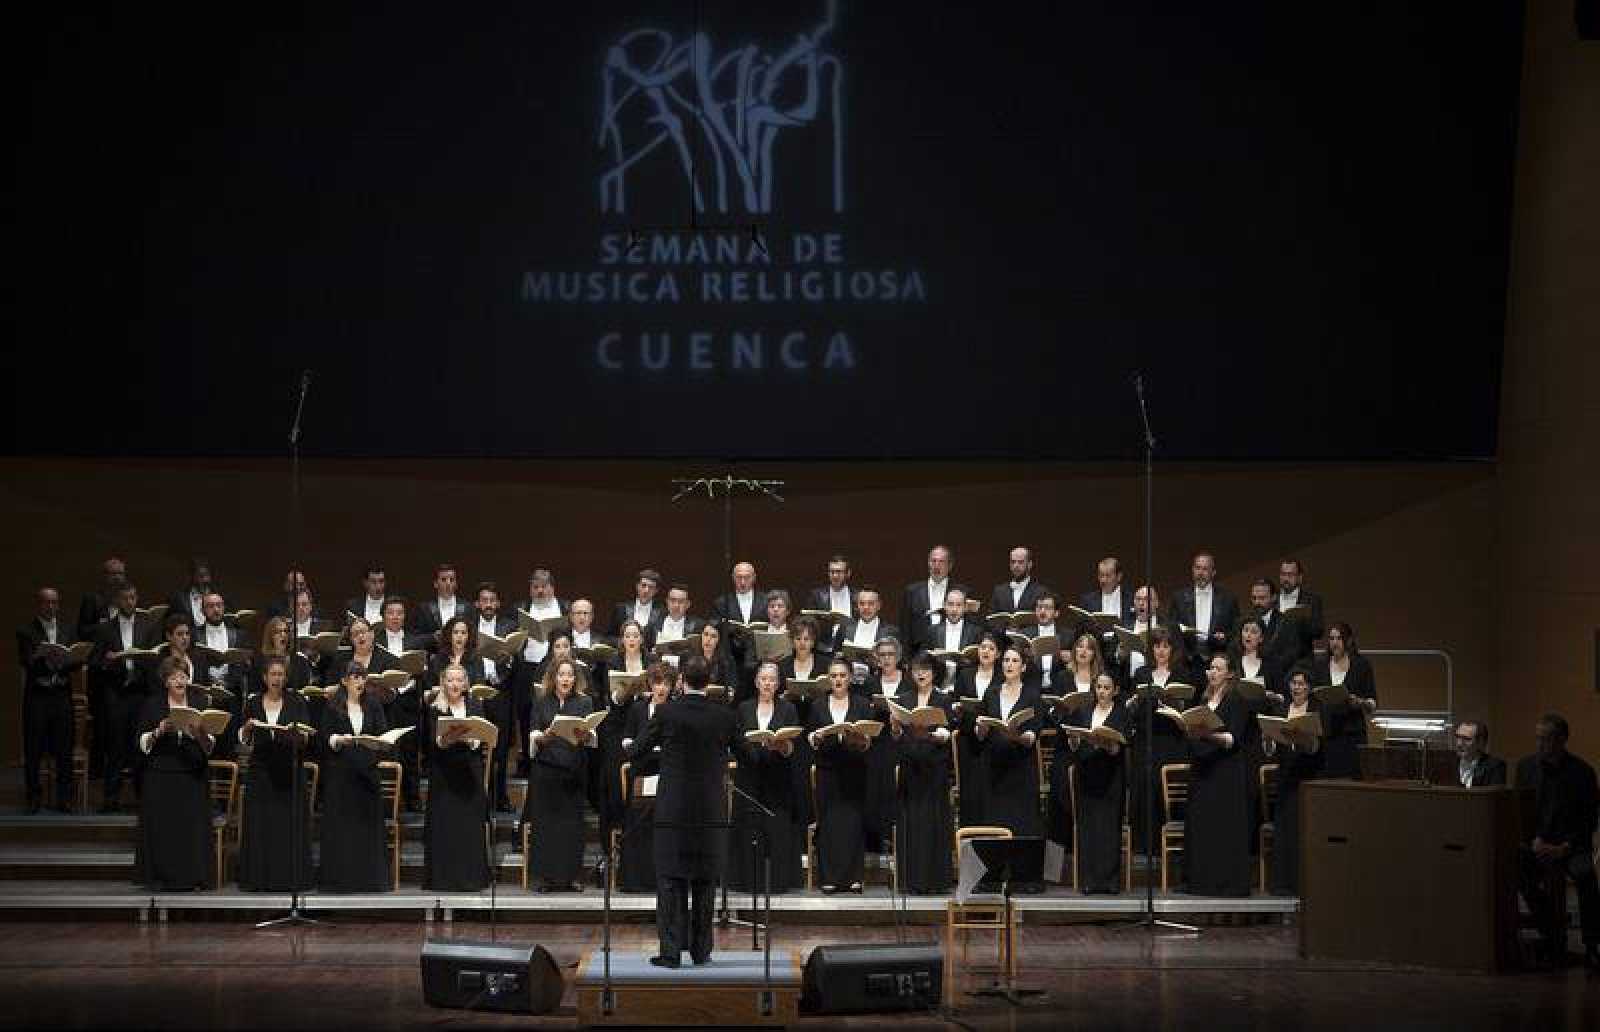 Semana-de-Musica-Religiosa-de-Cuenca